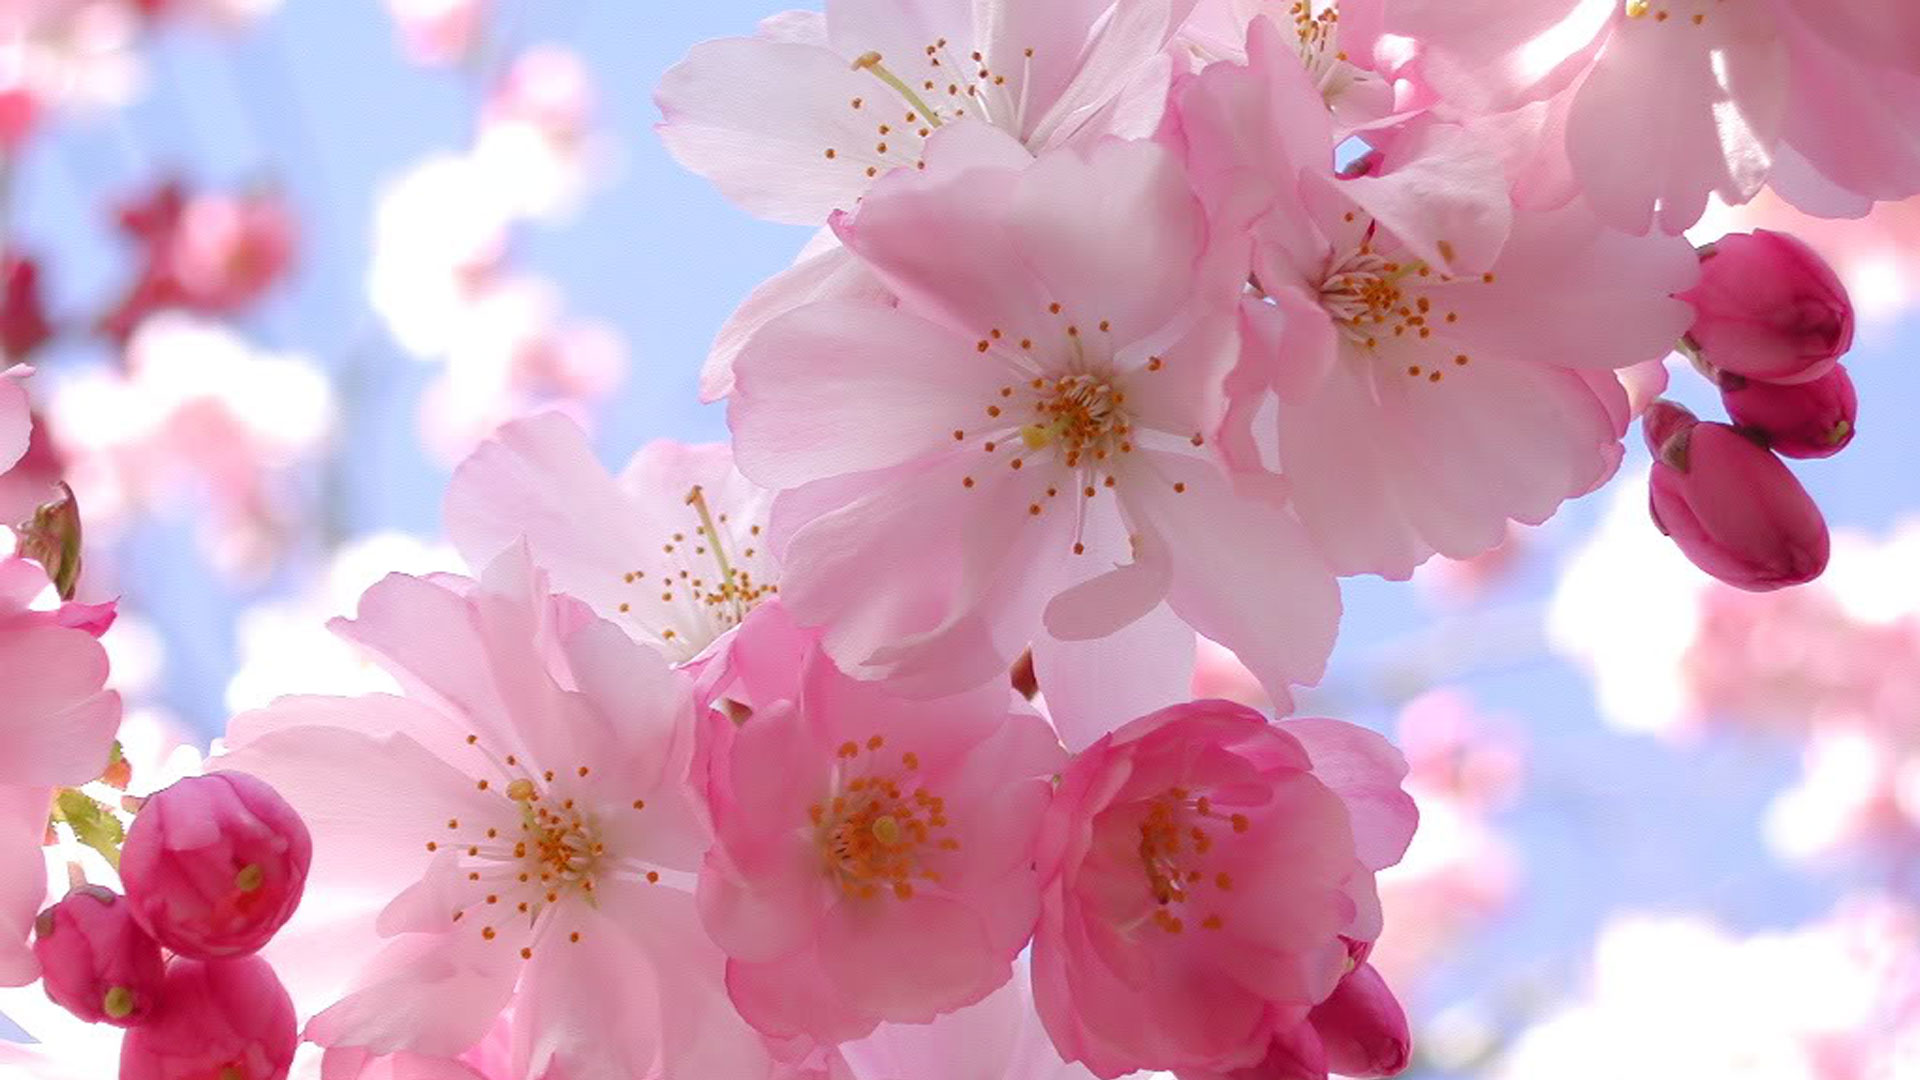 Hoa Tulip Những Bông Lĩnh Vực - Ảnh miễn phí trên Pixabay - Pixabay